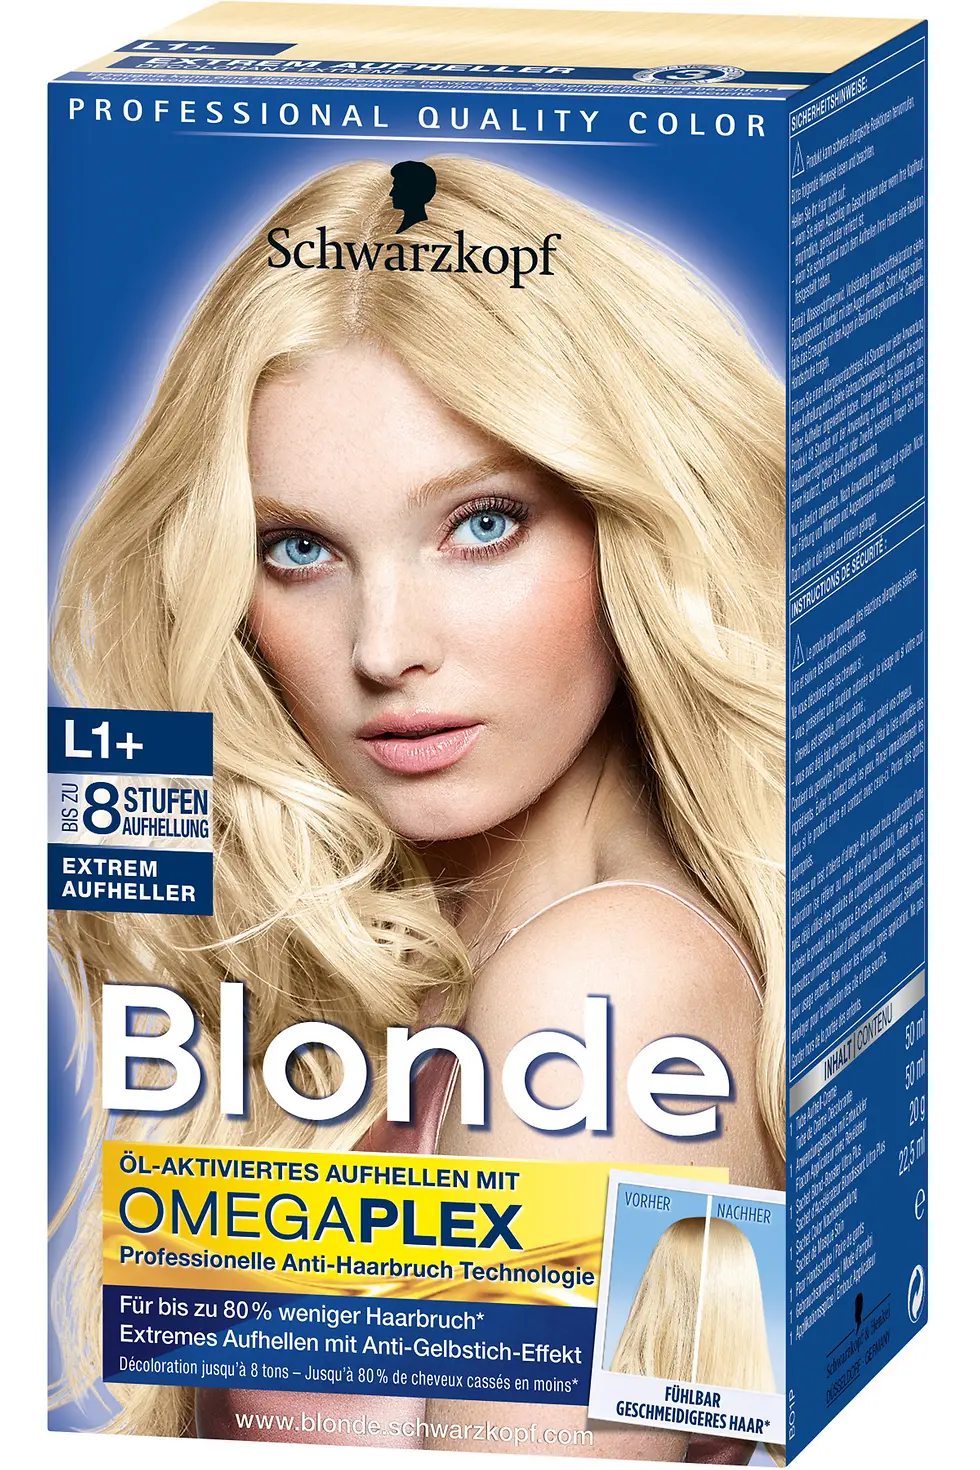 Schwarzkopf Blonde mit OmegaPlex®